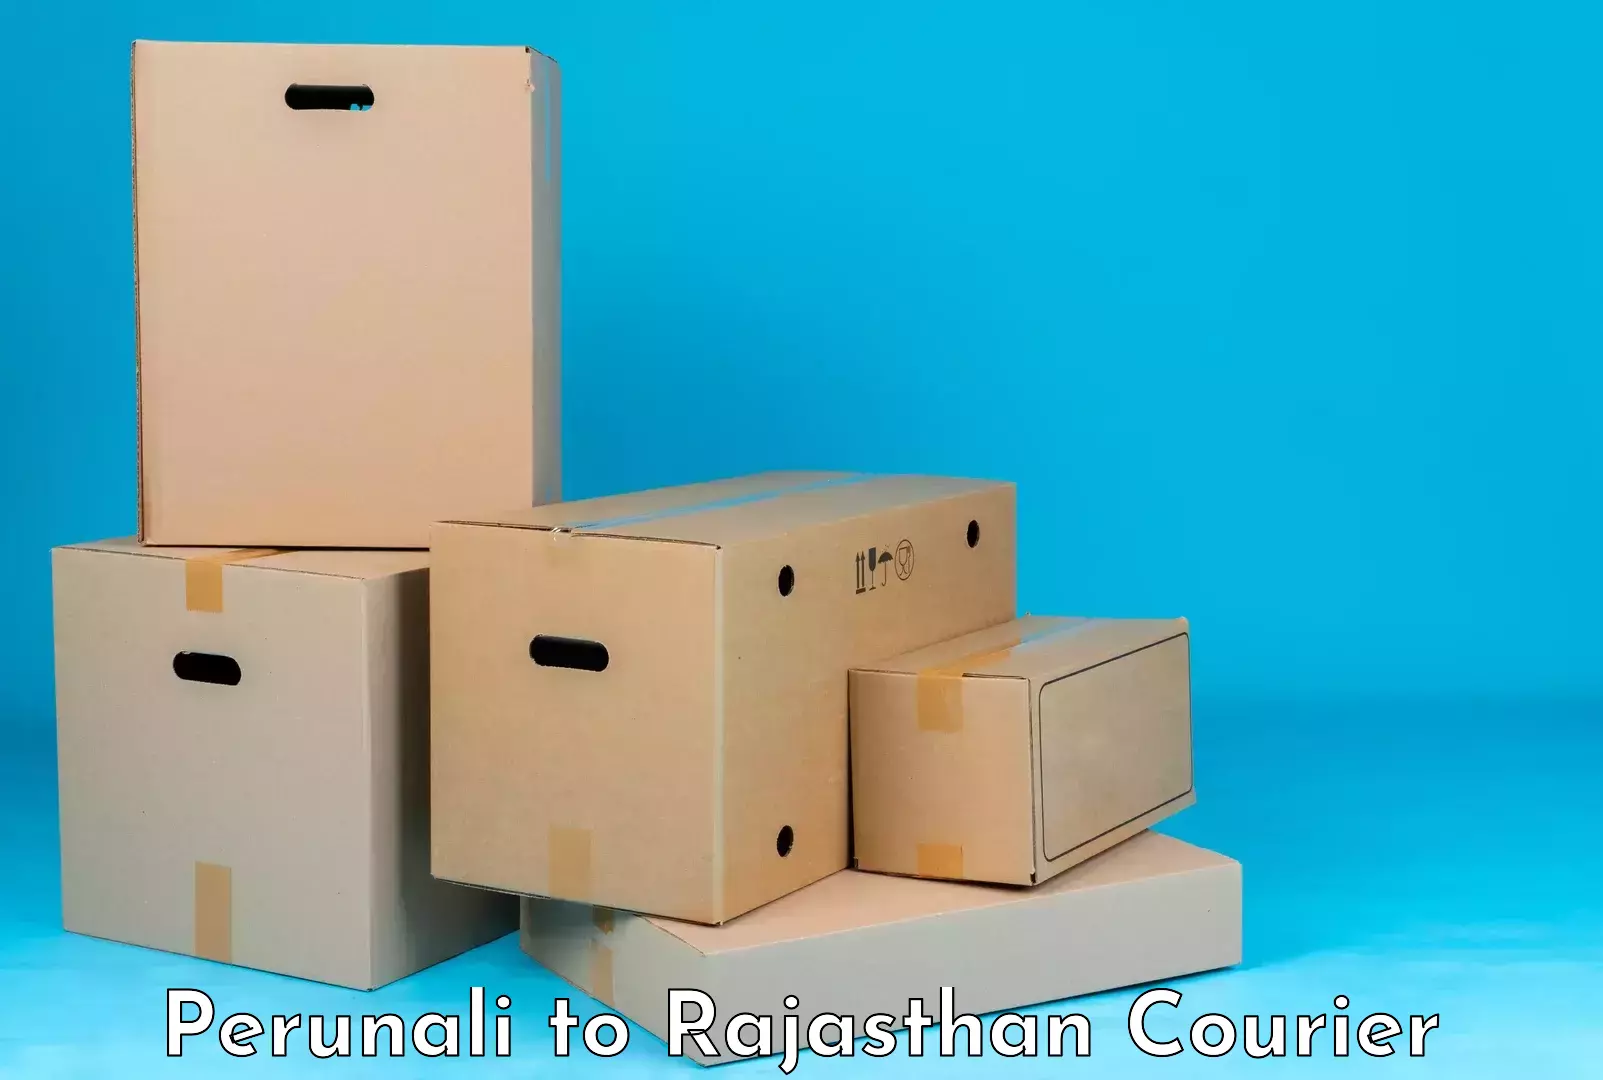 Luggage delivery system Perunali to Taranagar